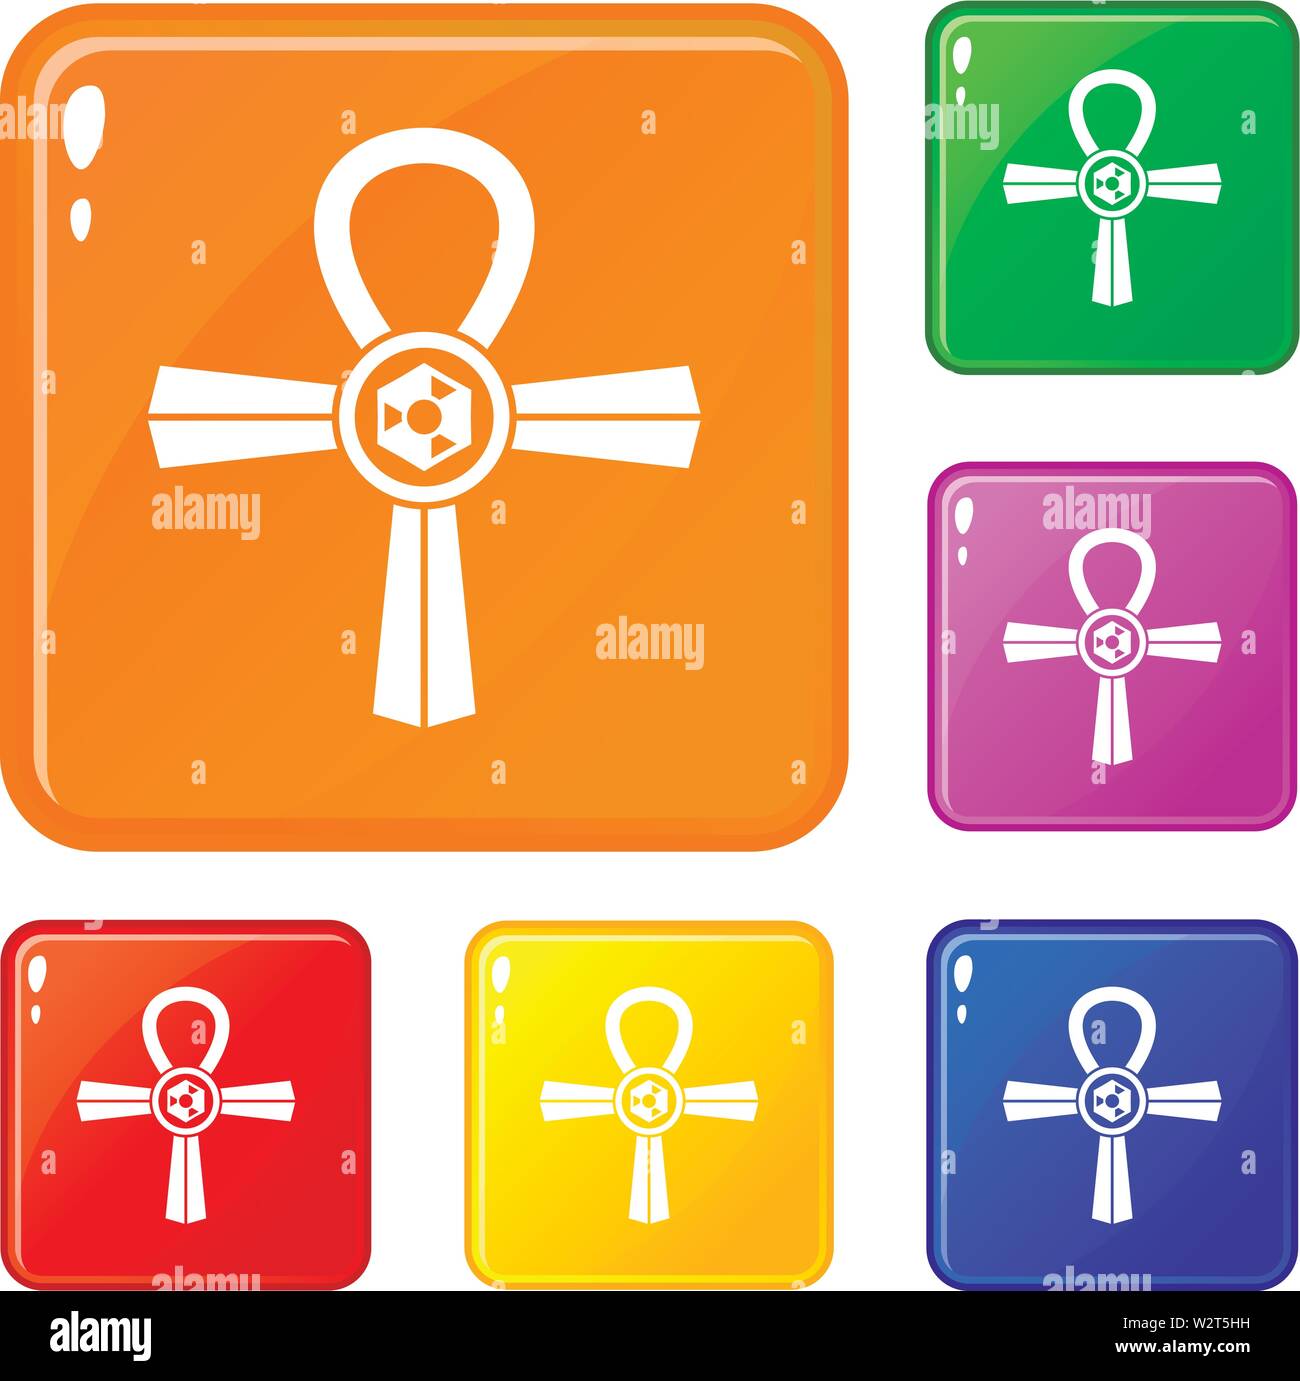 L'Égypte symbole Ankh icons set vector color Illustration de Vecteur